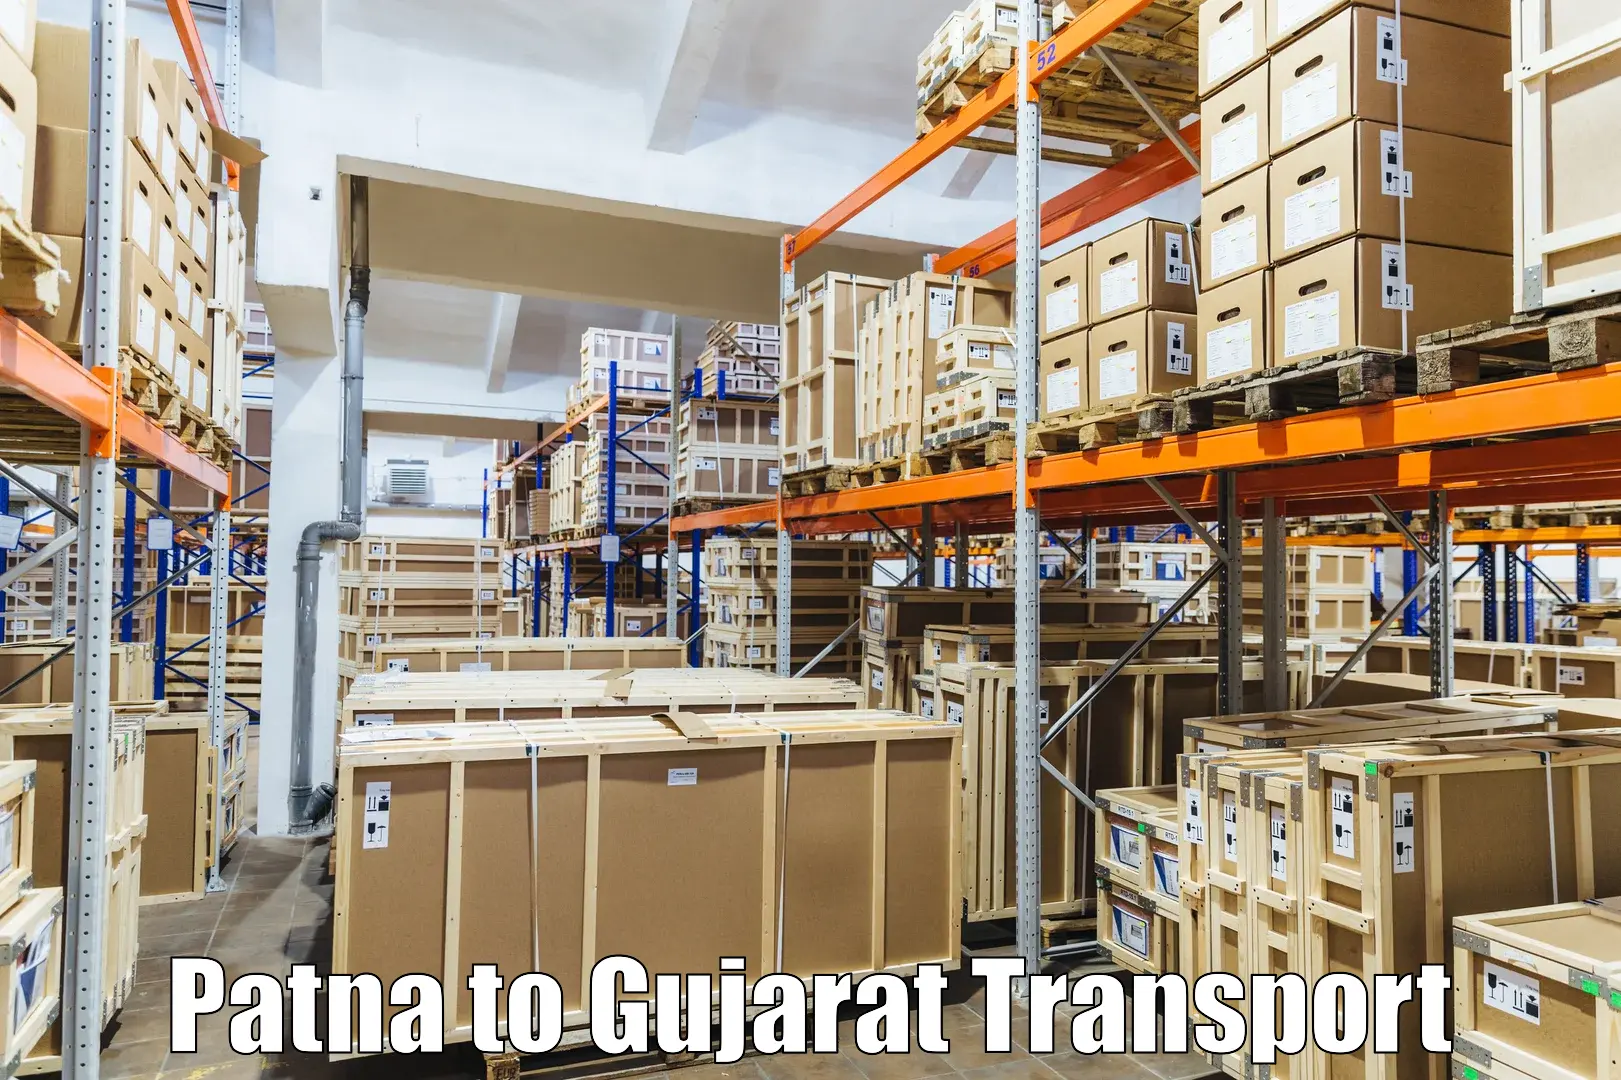 Air cargo transport services Patna to Katodara